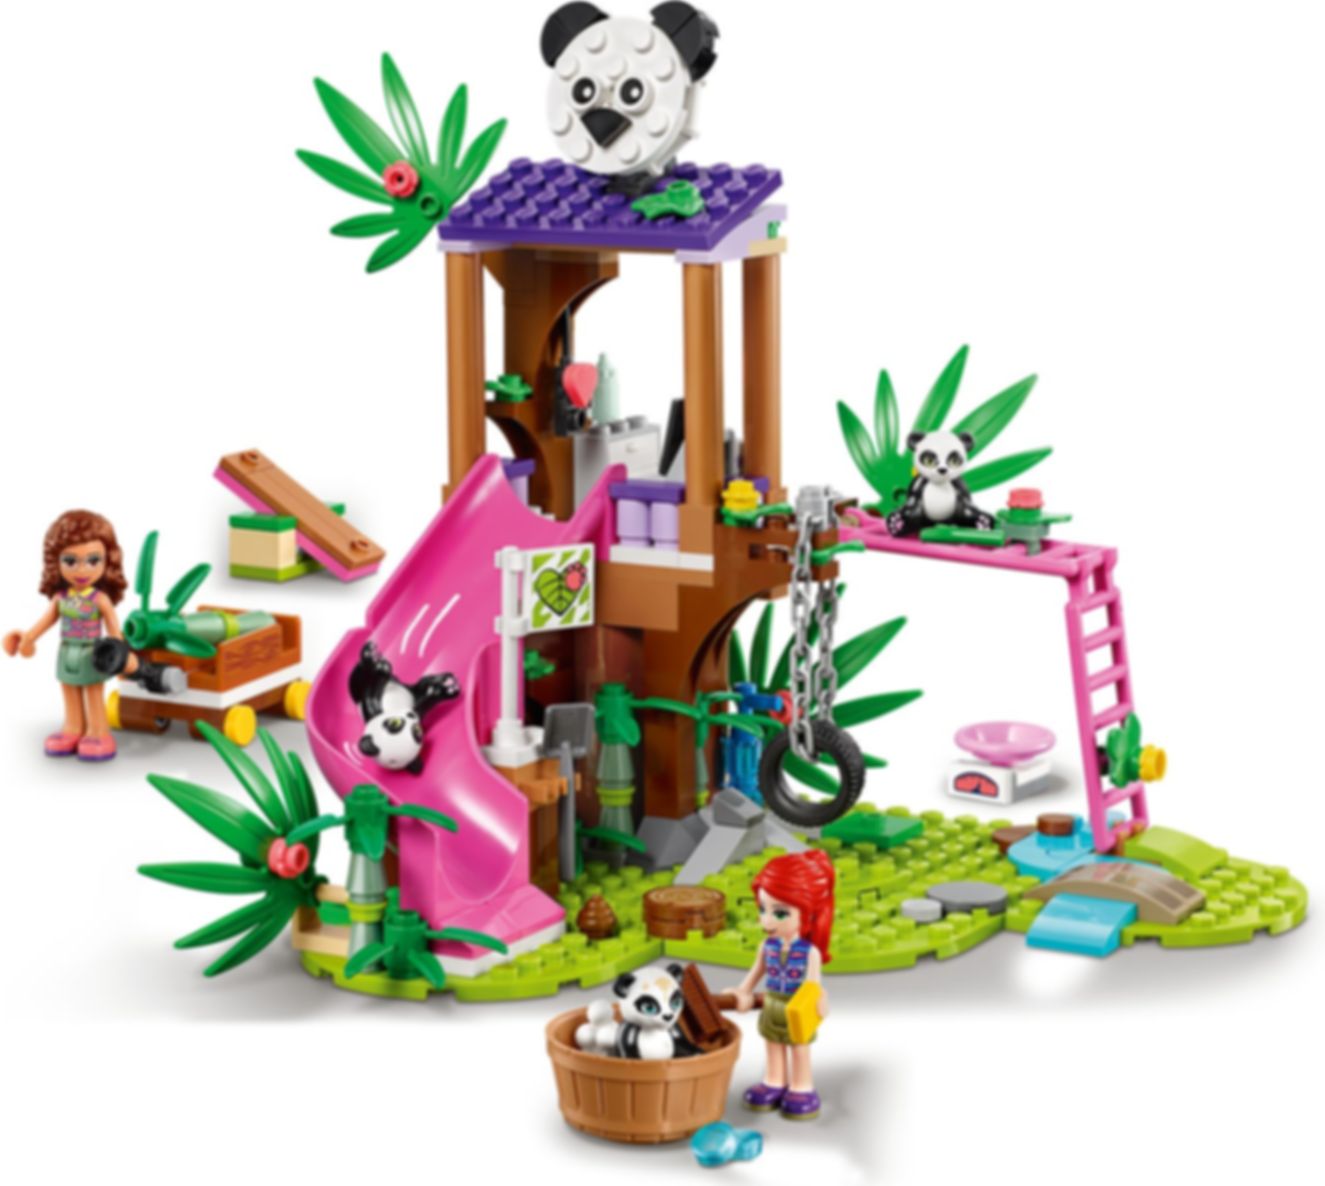 LEGO® Friends Casa del Árbol Panda en la Jungla jugabilidad